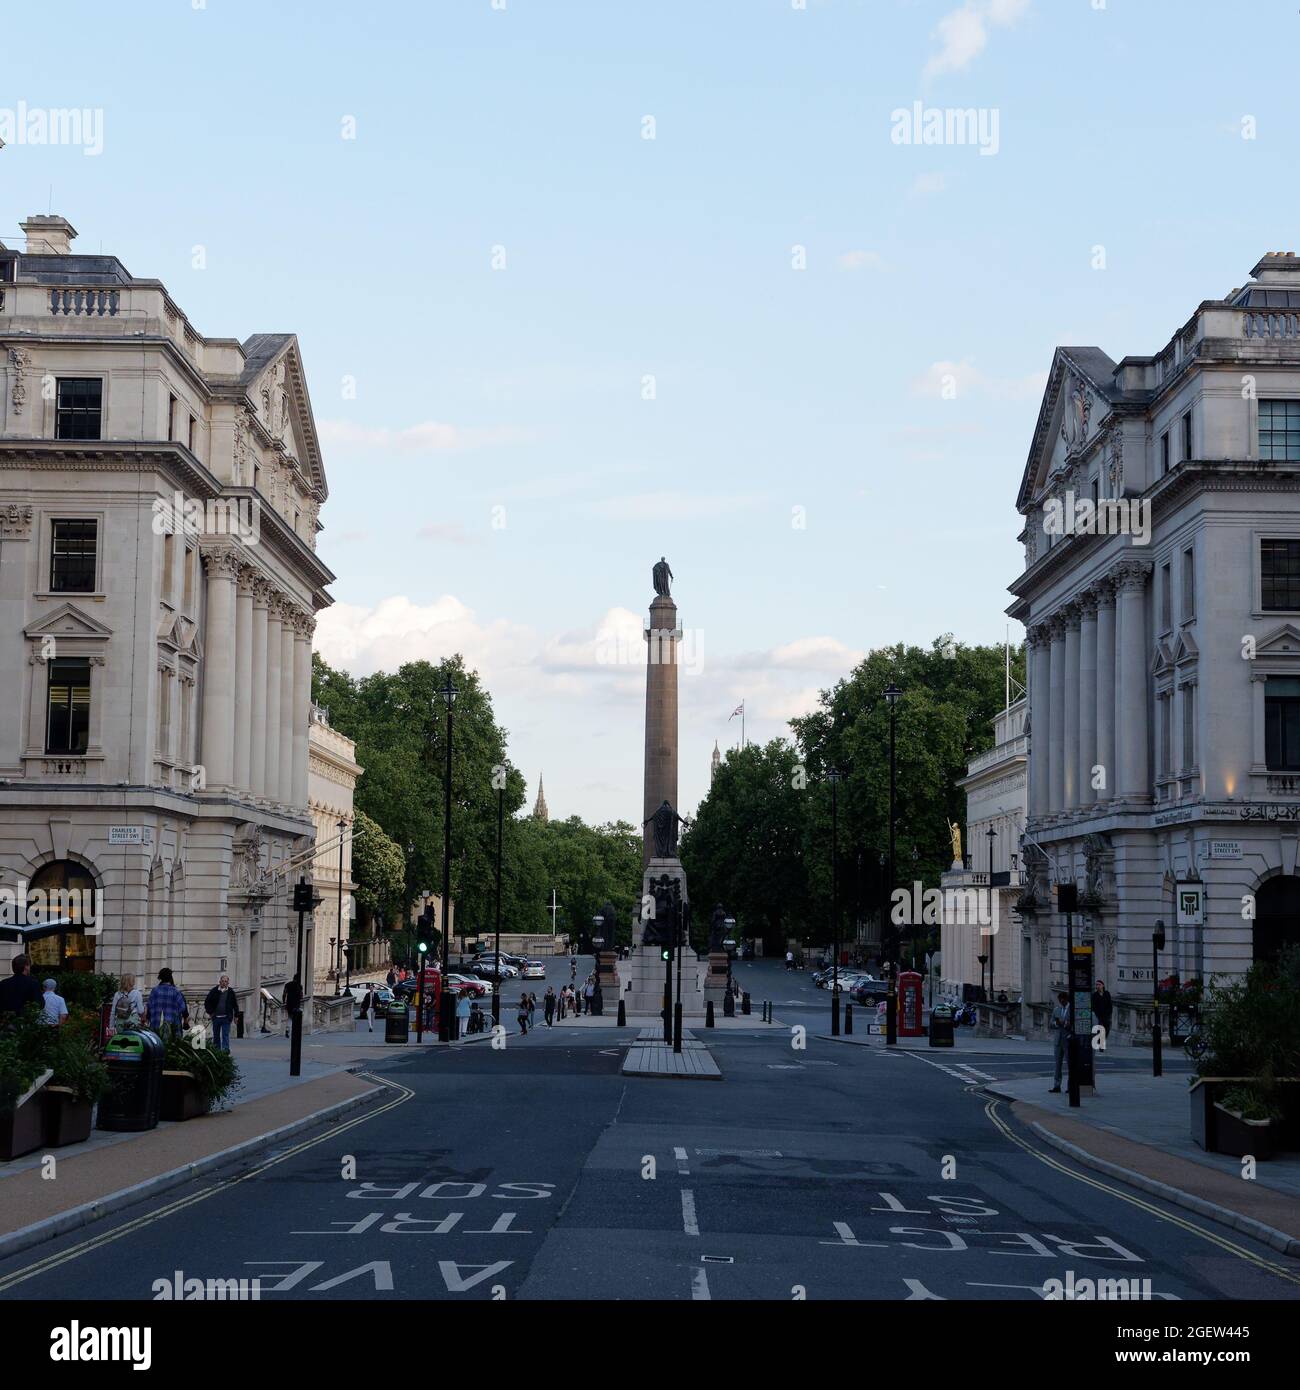 Londra, Grande Londra, Inghilterra, 10 2021 agosto: Waterloo Place con la statua del Duca di York di Richard Westmacott in cima alla colonna Toscana. Foto Stock